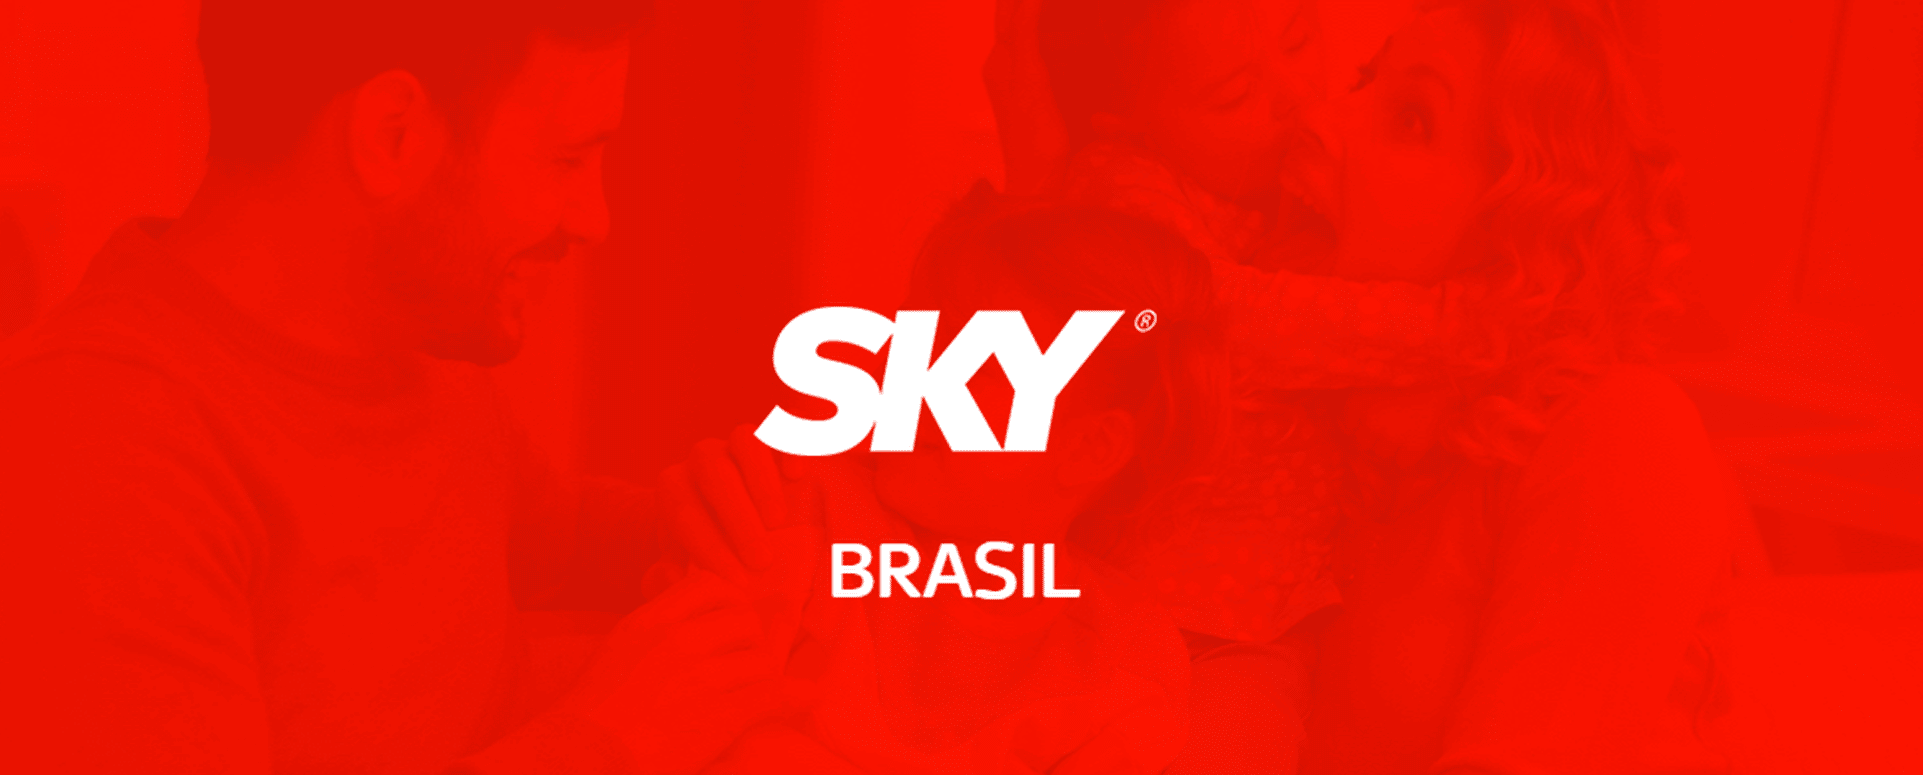 Sky Brasil